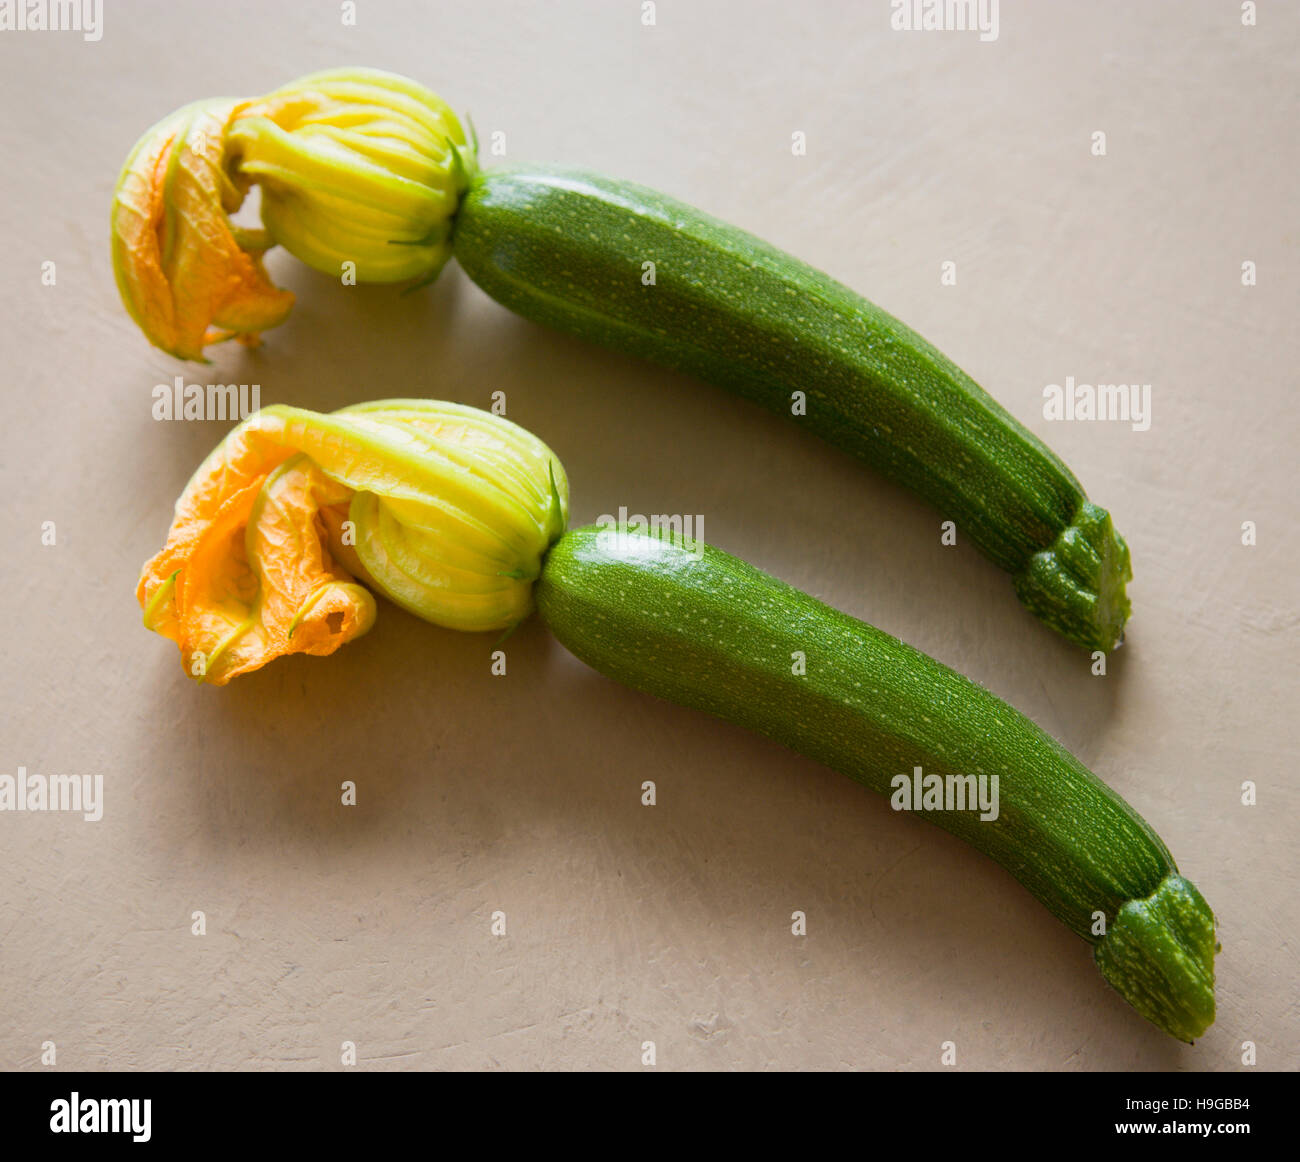 La zucchina, Curcubito pepo, due appena raccolto le zucchine con i fiori intatti. Foto Stock